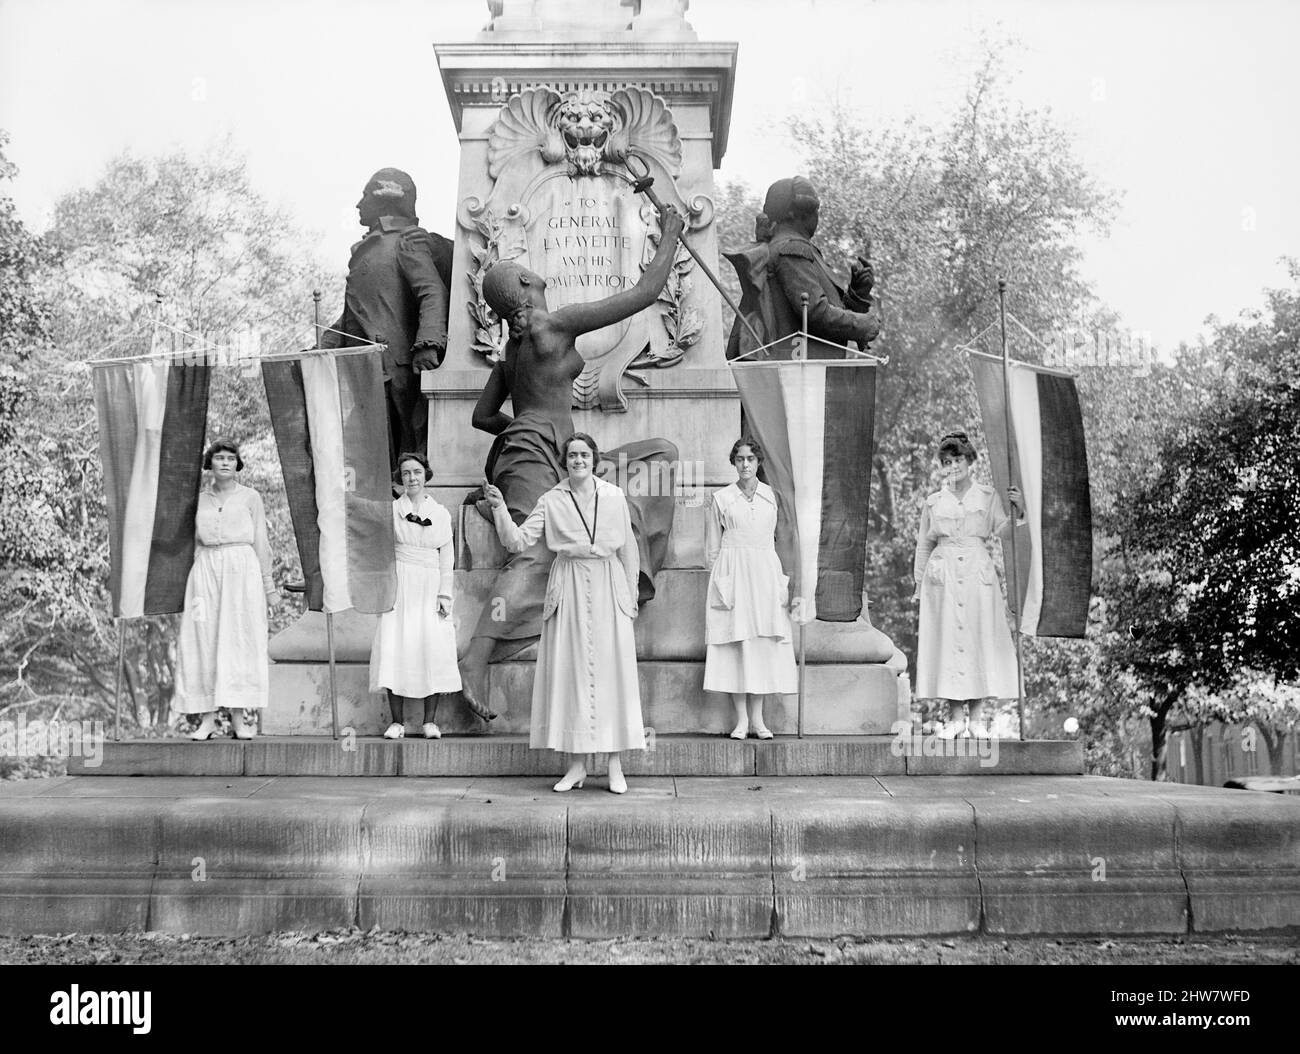 Suffragettes manifestant à la statue de Lafayette, Washington DC, États-Unis, Harris & Ewing, 1918 Banque D'Images